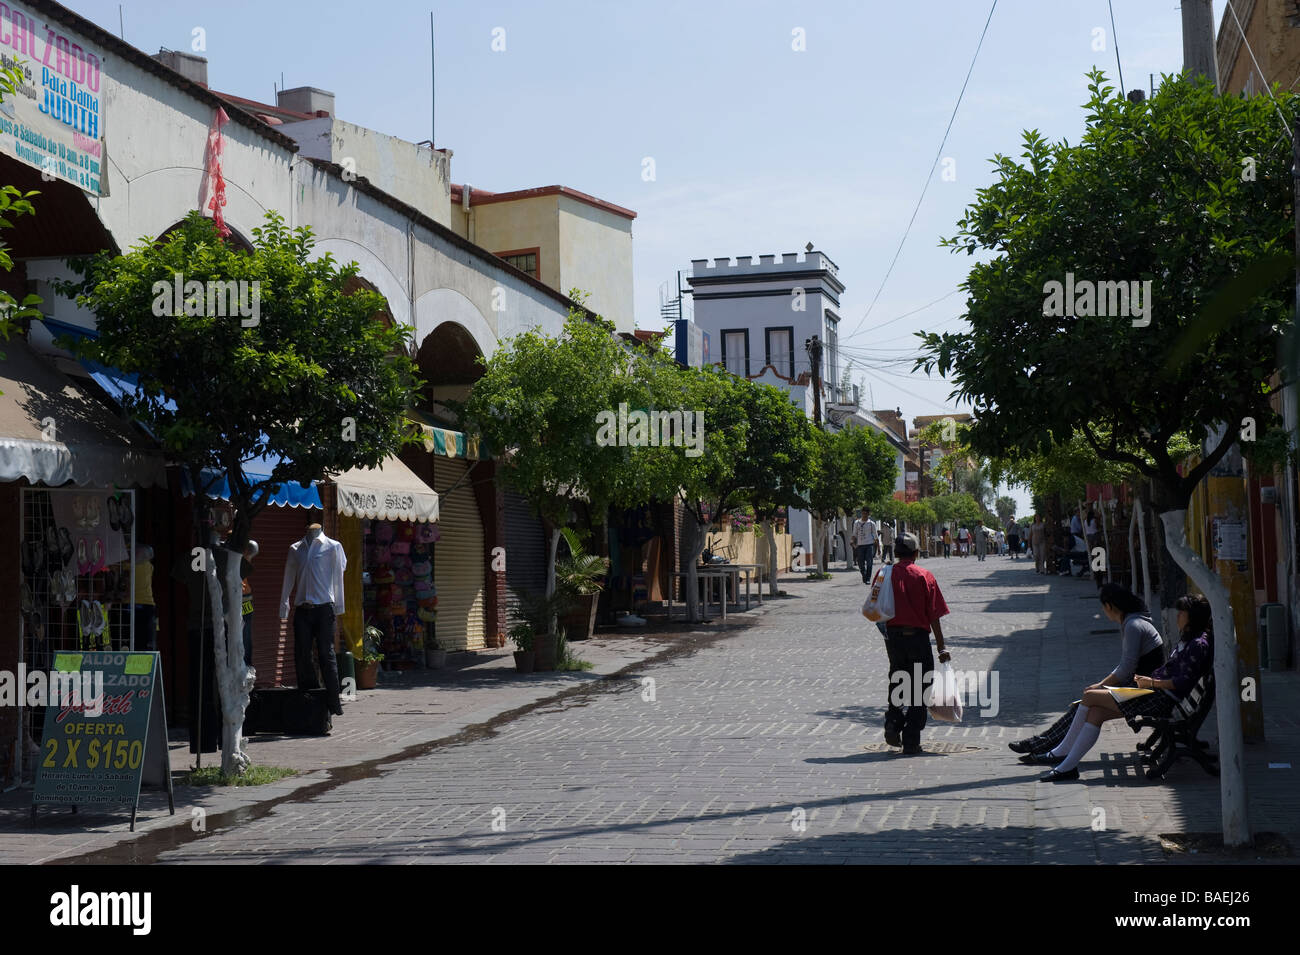 Entering the shopping area of Tlaquepaque, Mexico. Stock Photo